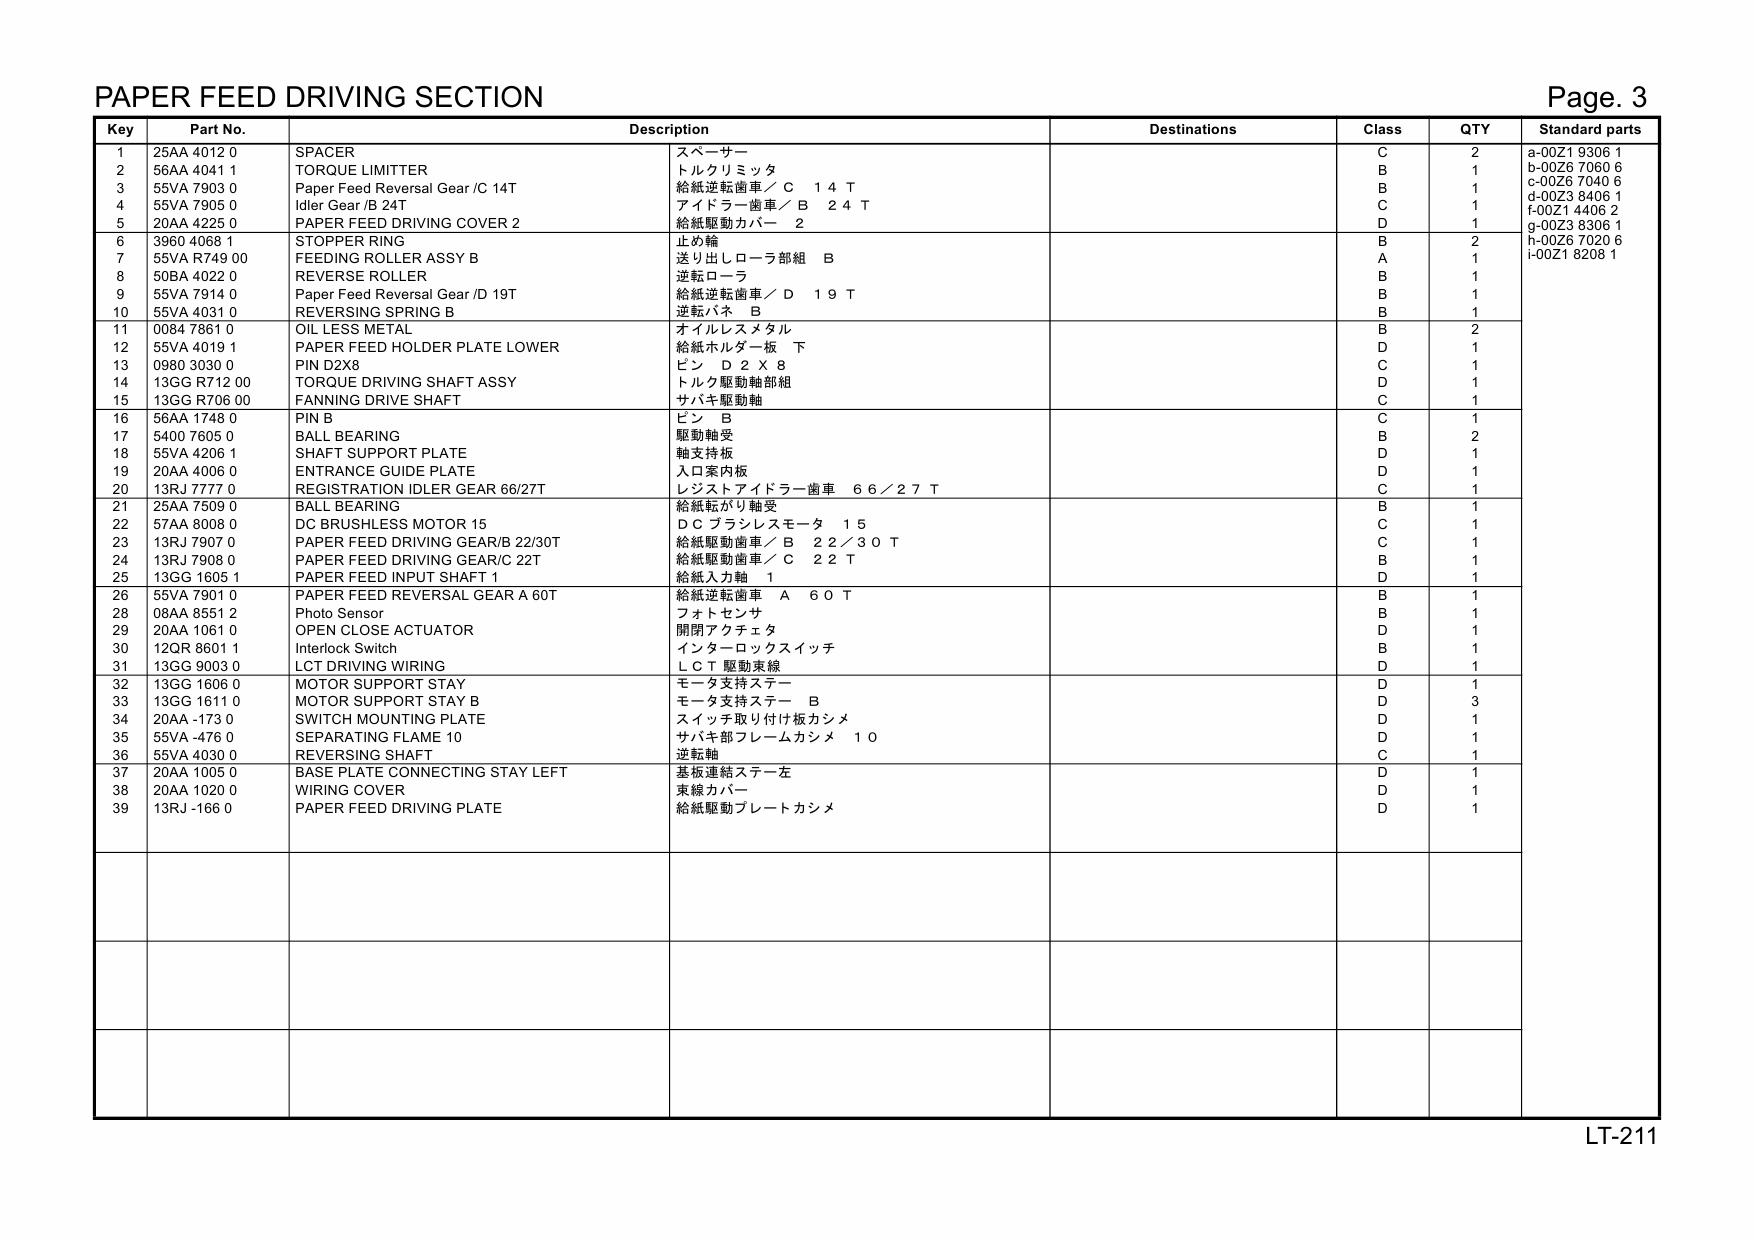 Konica-Minolta Options LT-211 20AA Parts Manual-3